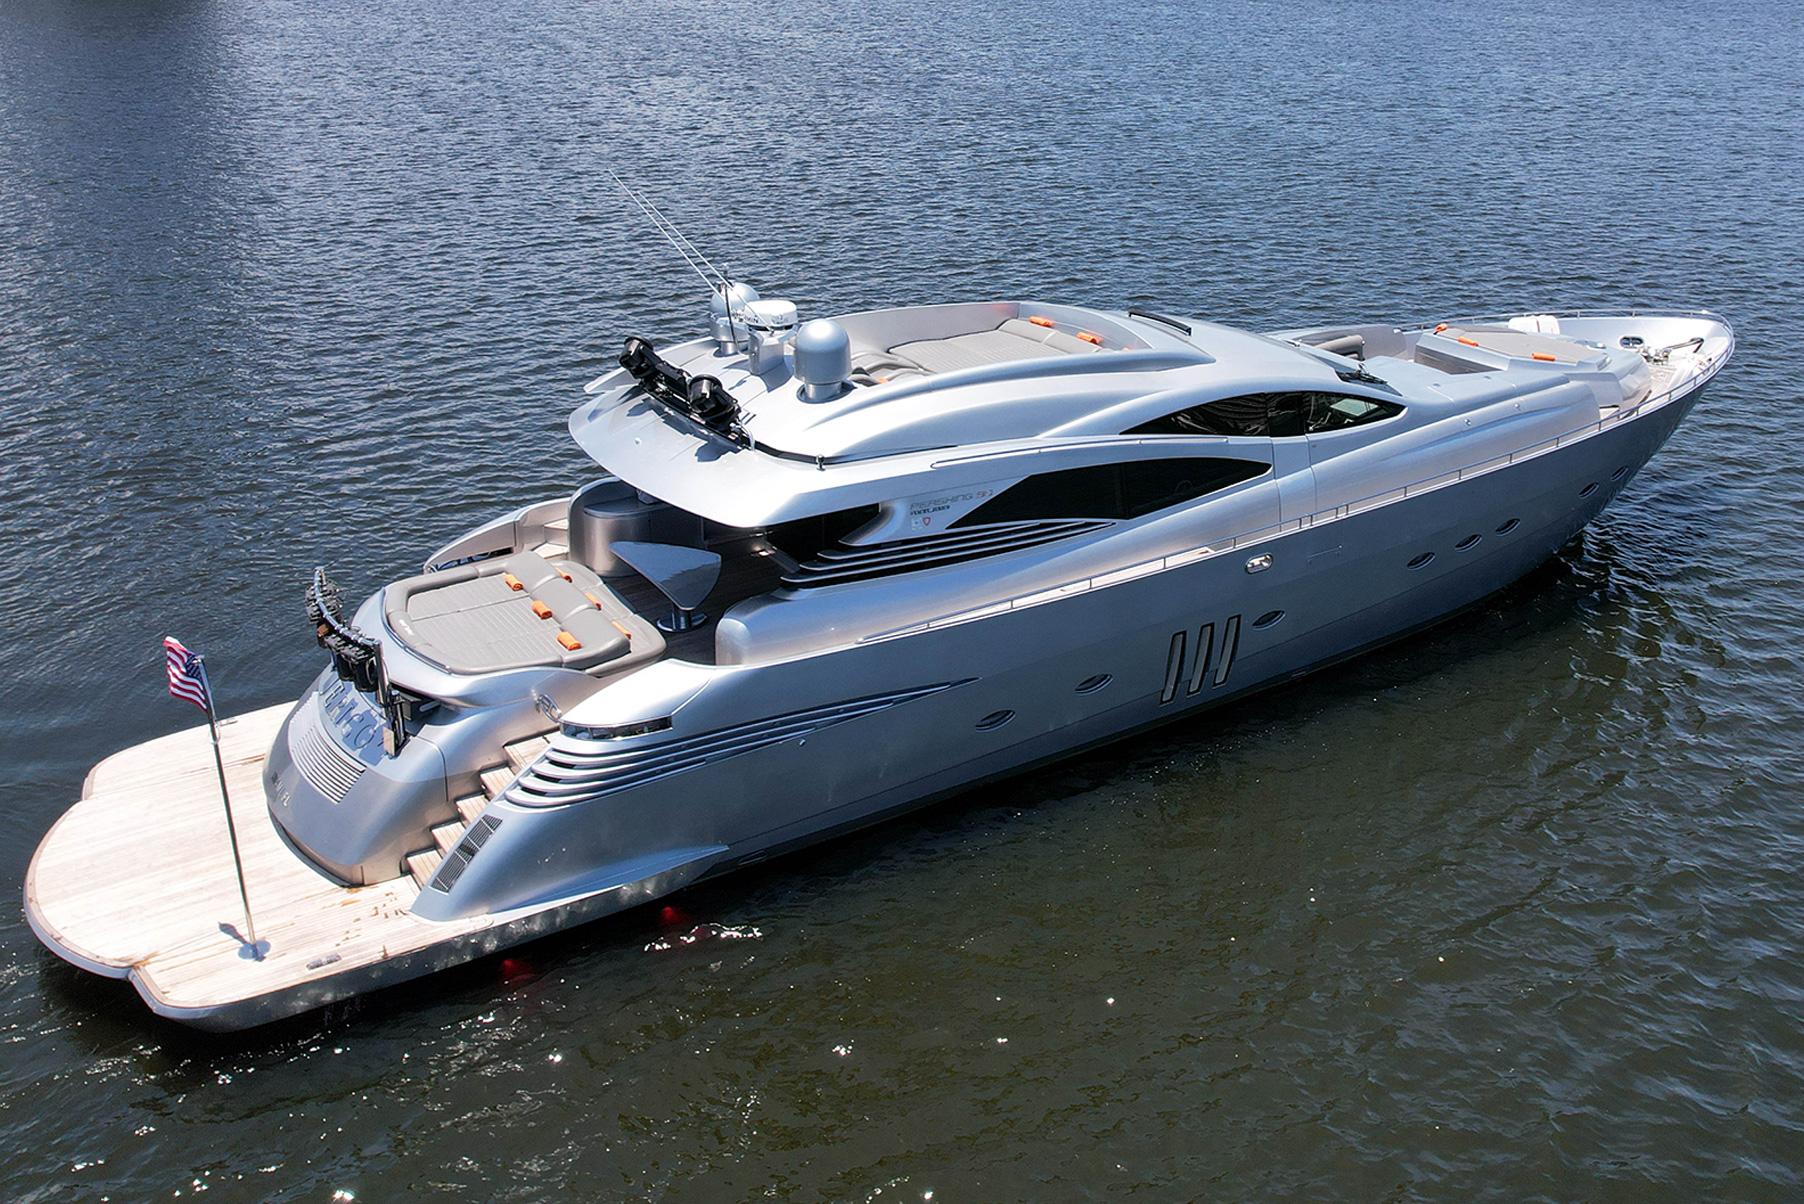 luxury yacht rental miami prices